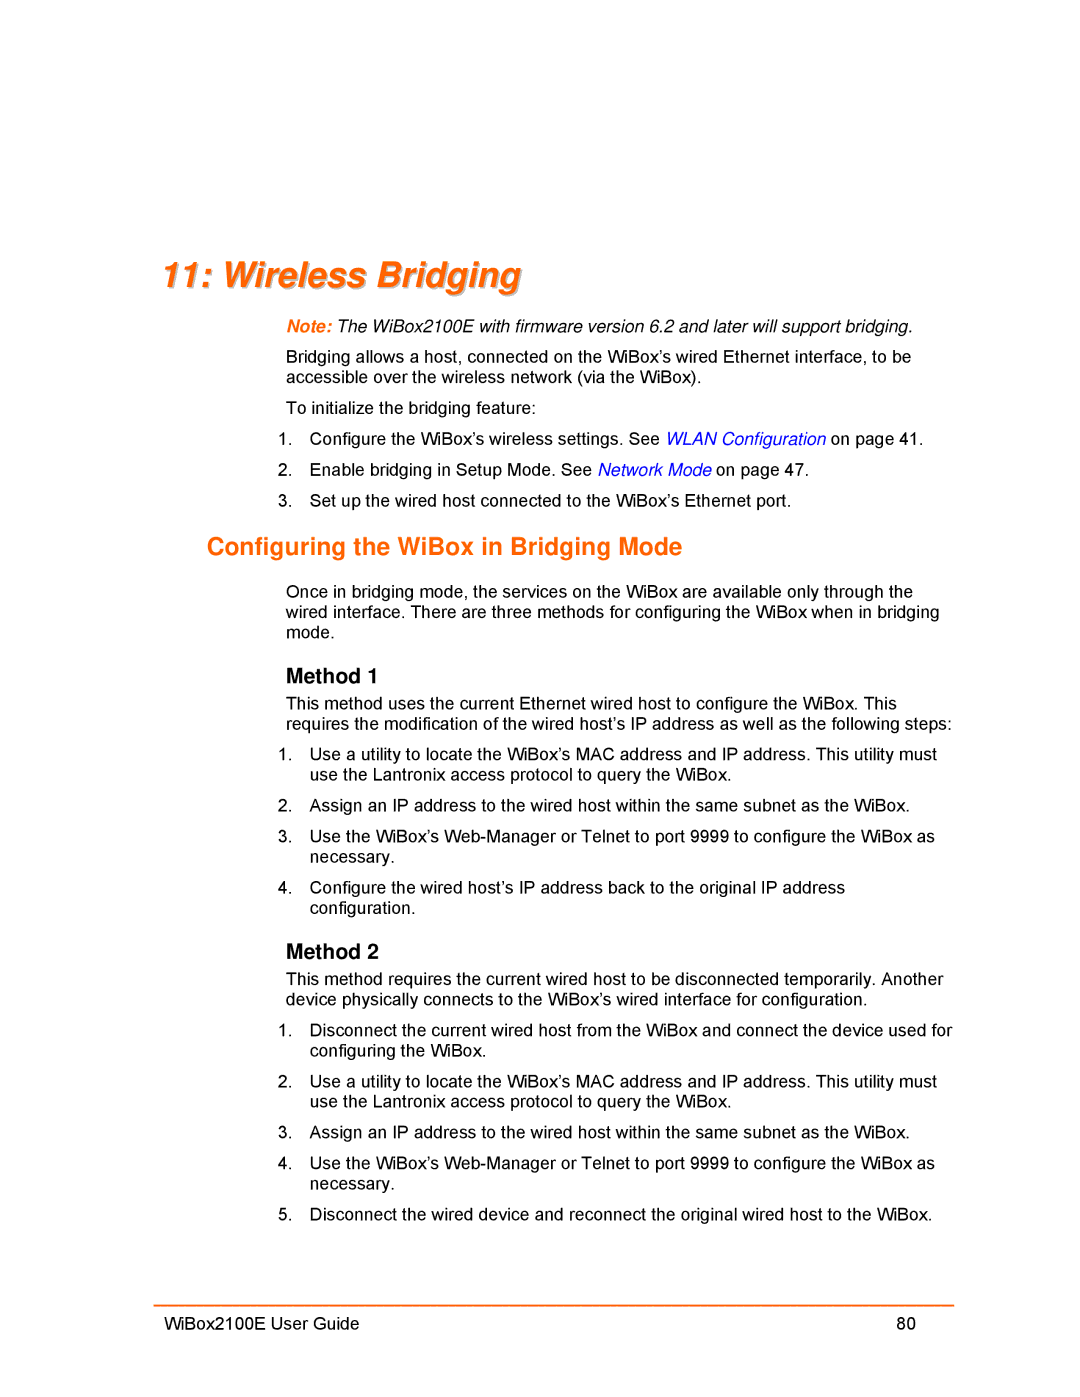 Lantronix Ethernet manual Wireless Bridging, Configuring the WiBox in Bridging Mode, Method 